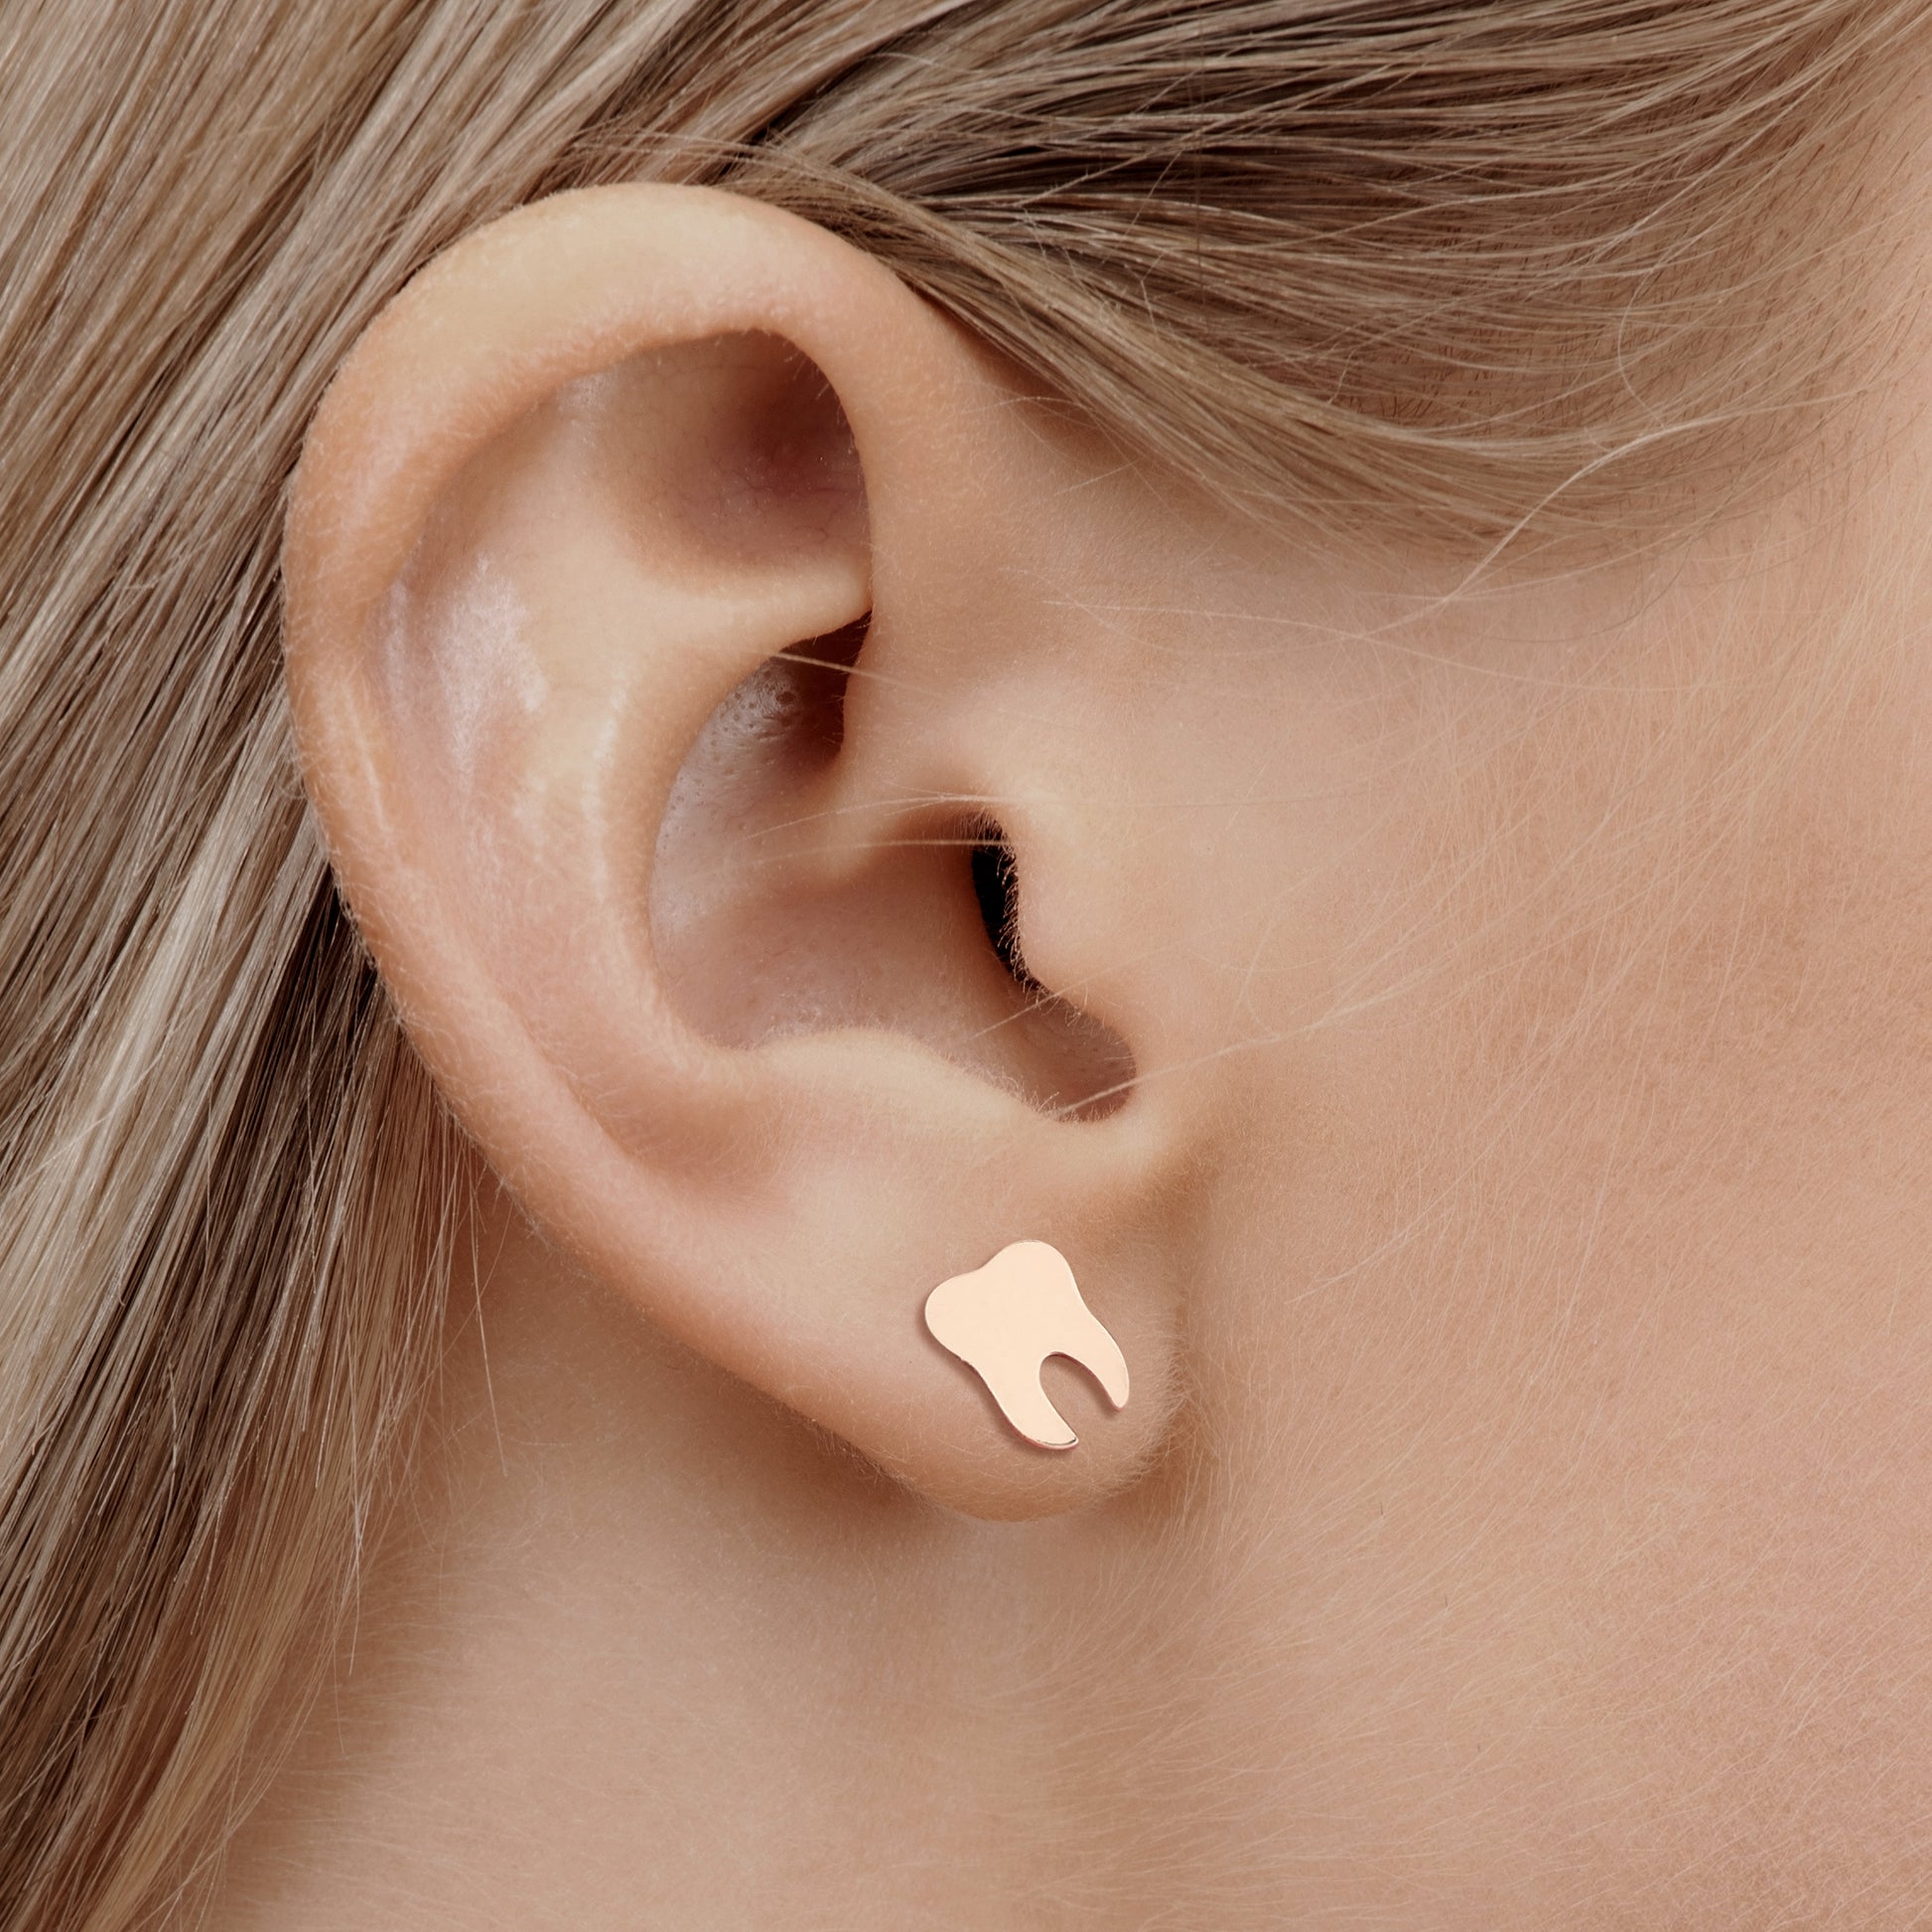 Dental Earrings for nurses in rose gold